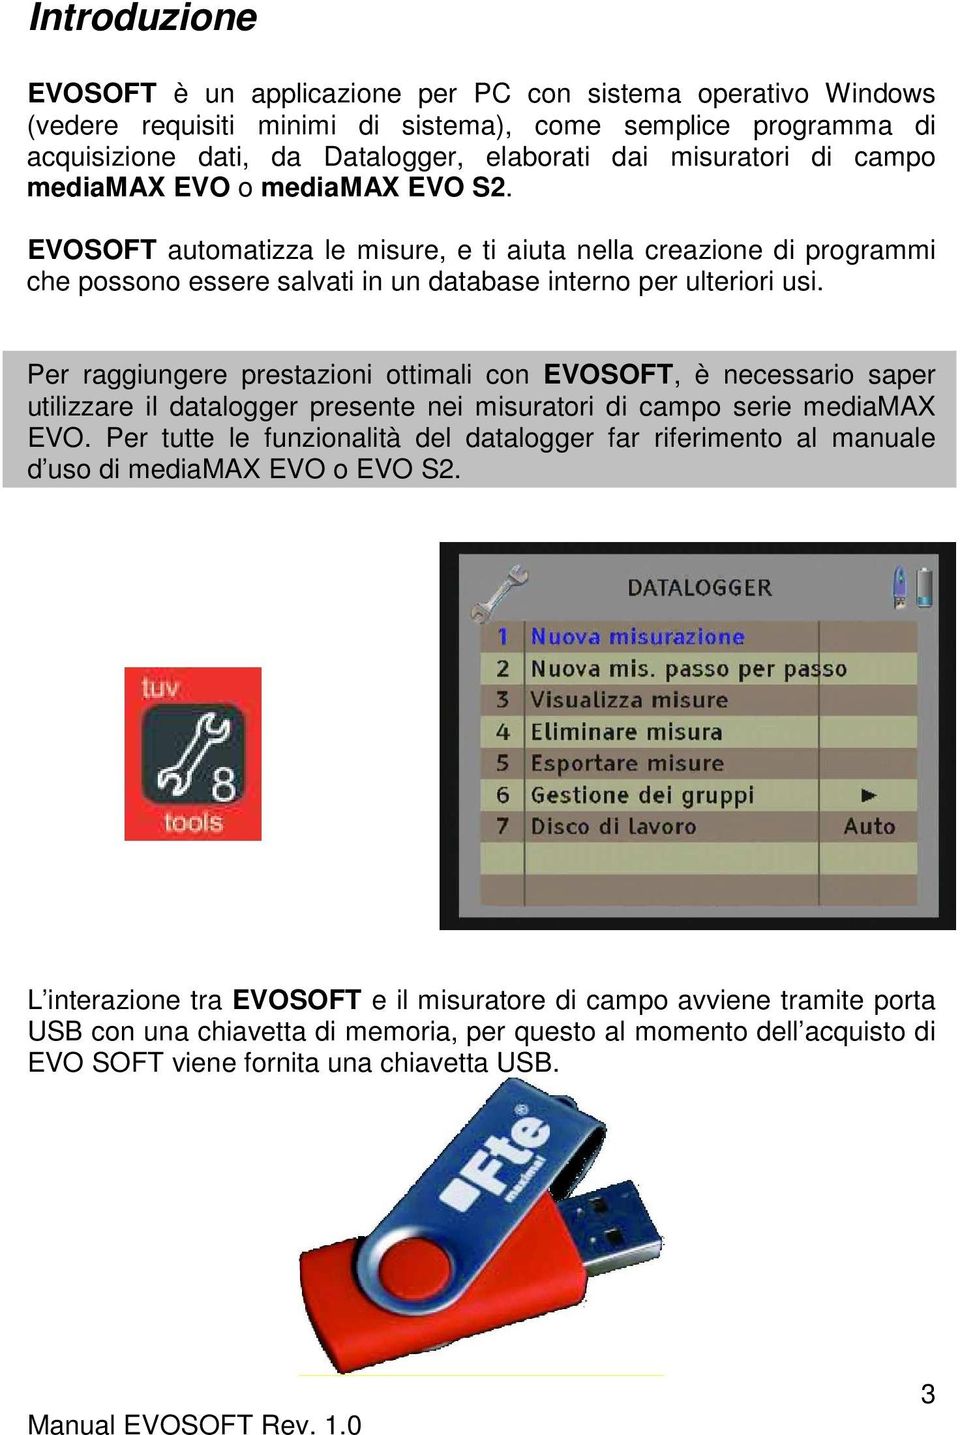 Per raggiungere prestazioni ottimali con EVOSOFT, è necessario saper utilizzare il datalogger presente nei misuratori di campo serie mediamax EVO.